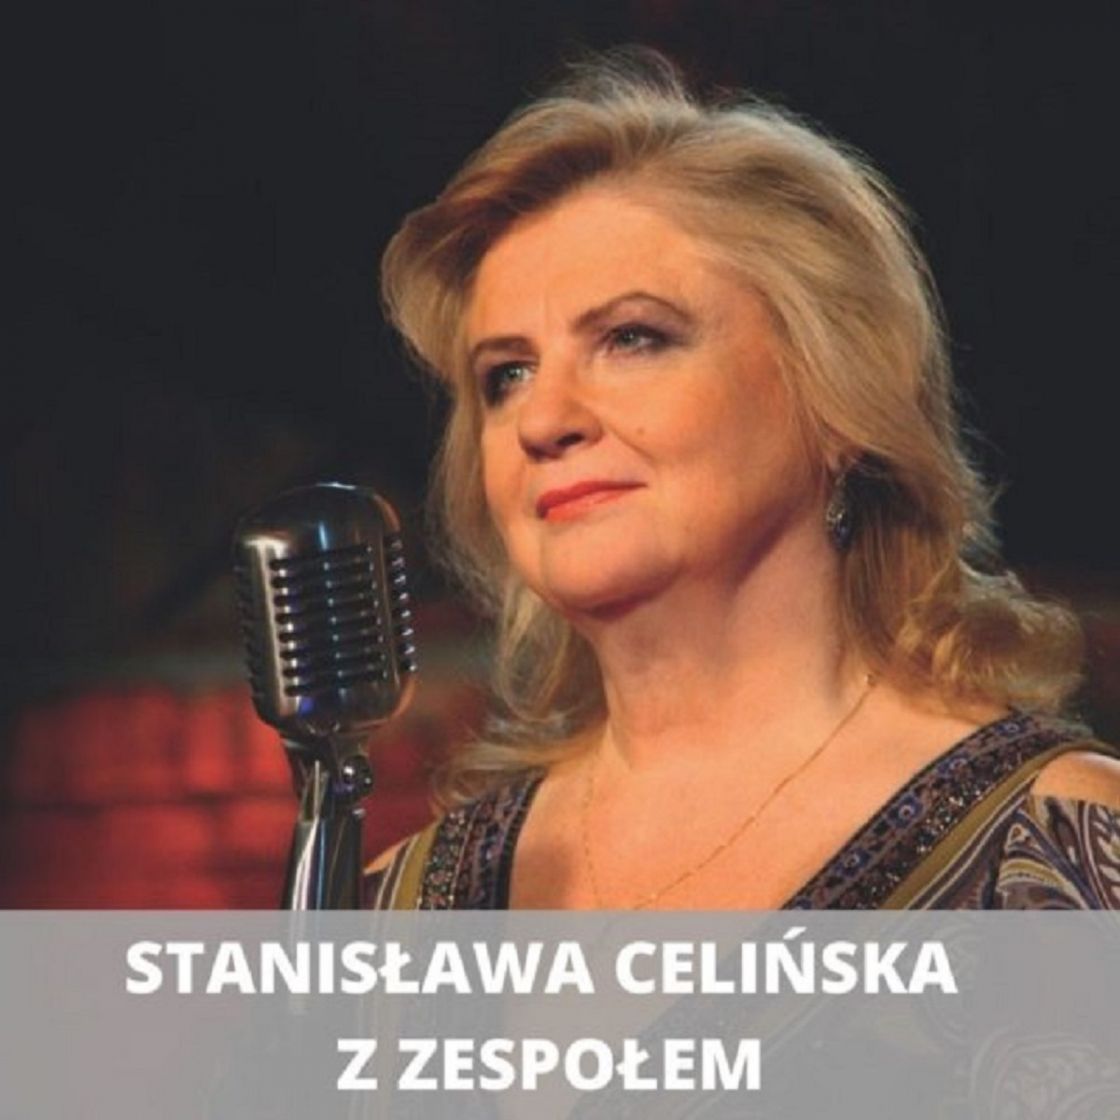 JESIENNA Stanisława Celińska z zespołem pod kierownictwem Macieja Muraszko